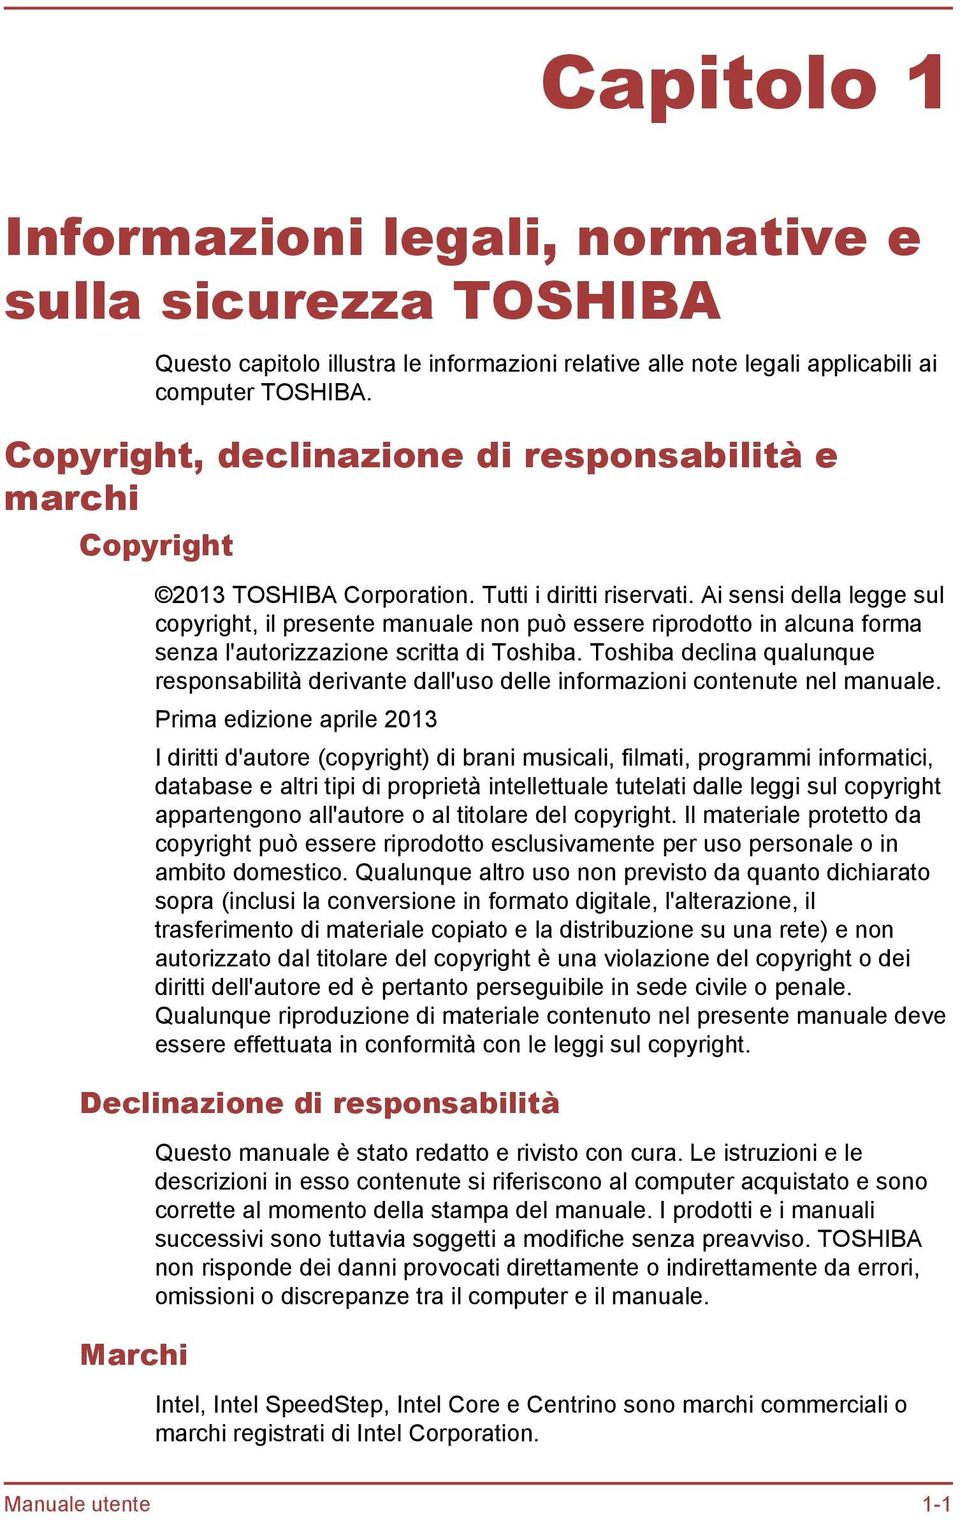 Ai sensi della legge sul copyright, il presente manuale non può essere riprodotto in alcuna forma senza l'autorizzazione scritta di Toshiba.